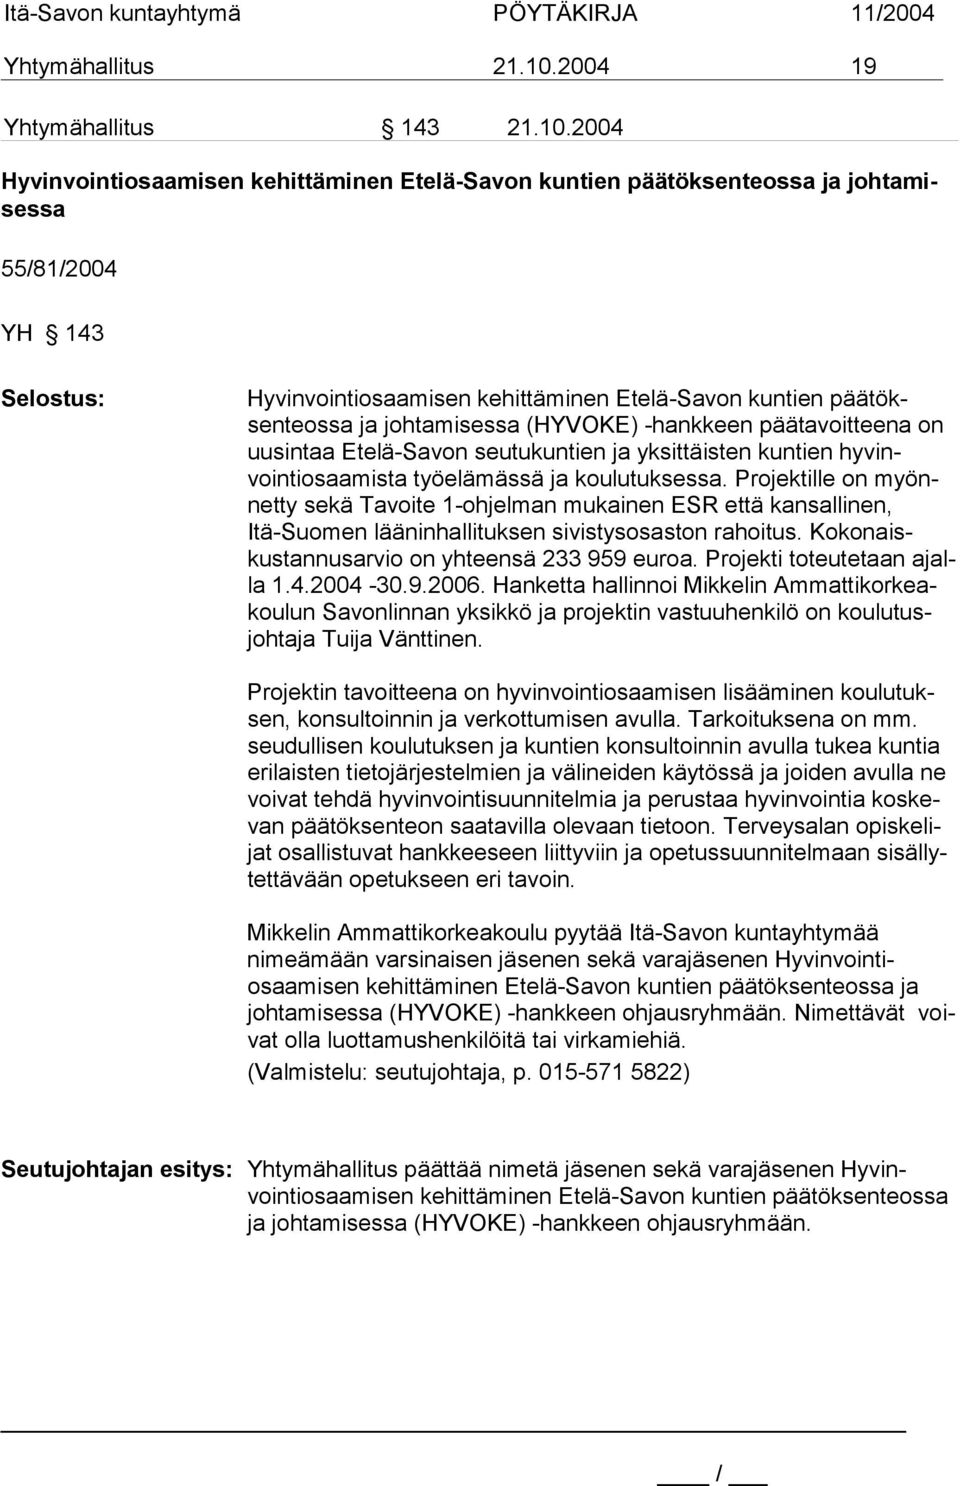 2004 Hyvinvointiosaamisen kehittäminen Etelä-Savon kuntien päätöksenteossa ja johtamisessa 55/81/2004 YH 143 Selostus: Hyvinvointiosaamisen kehittäminen Etelä-Savon kuntien päätöksenteossa ja